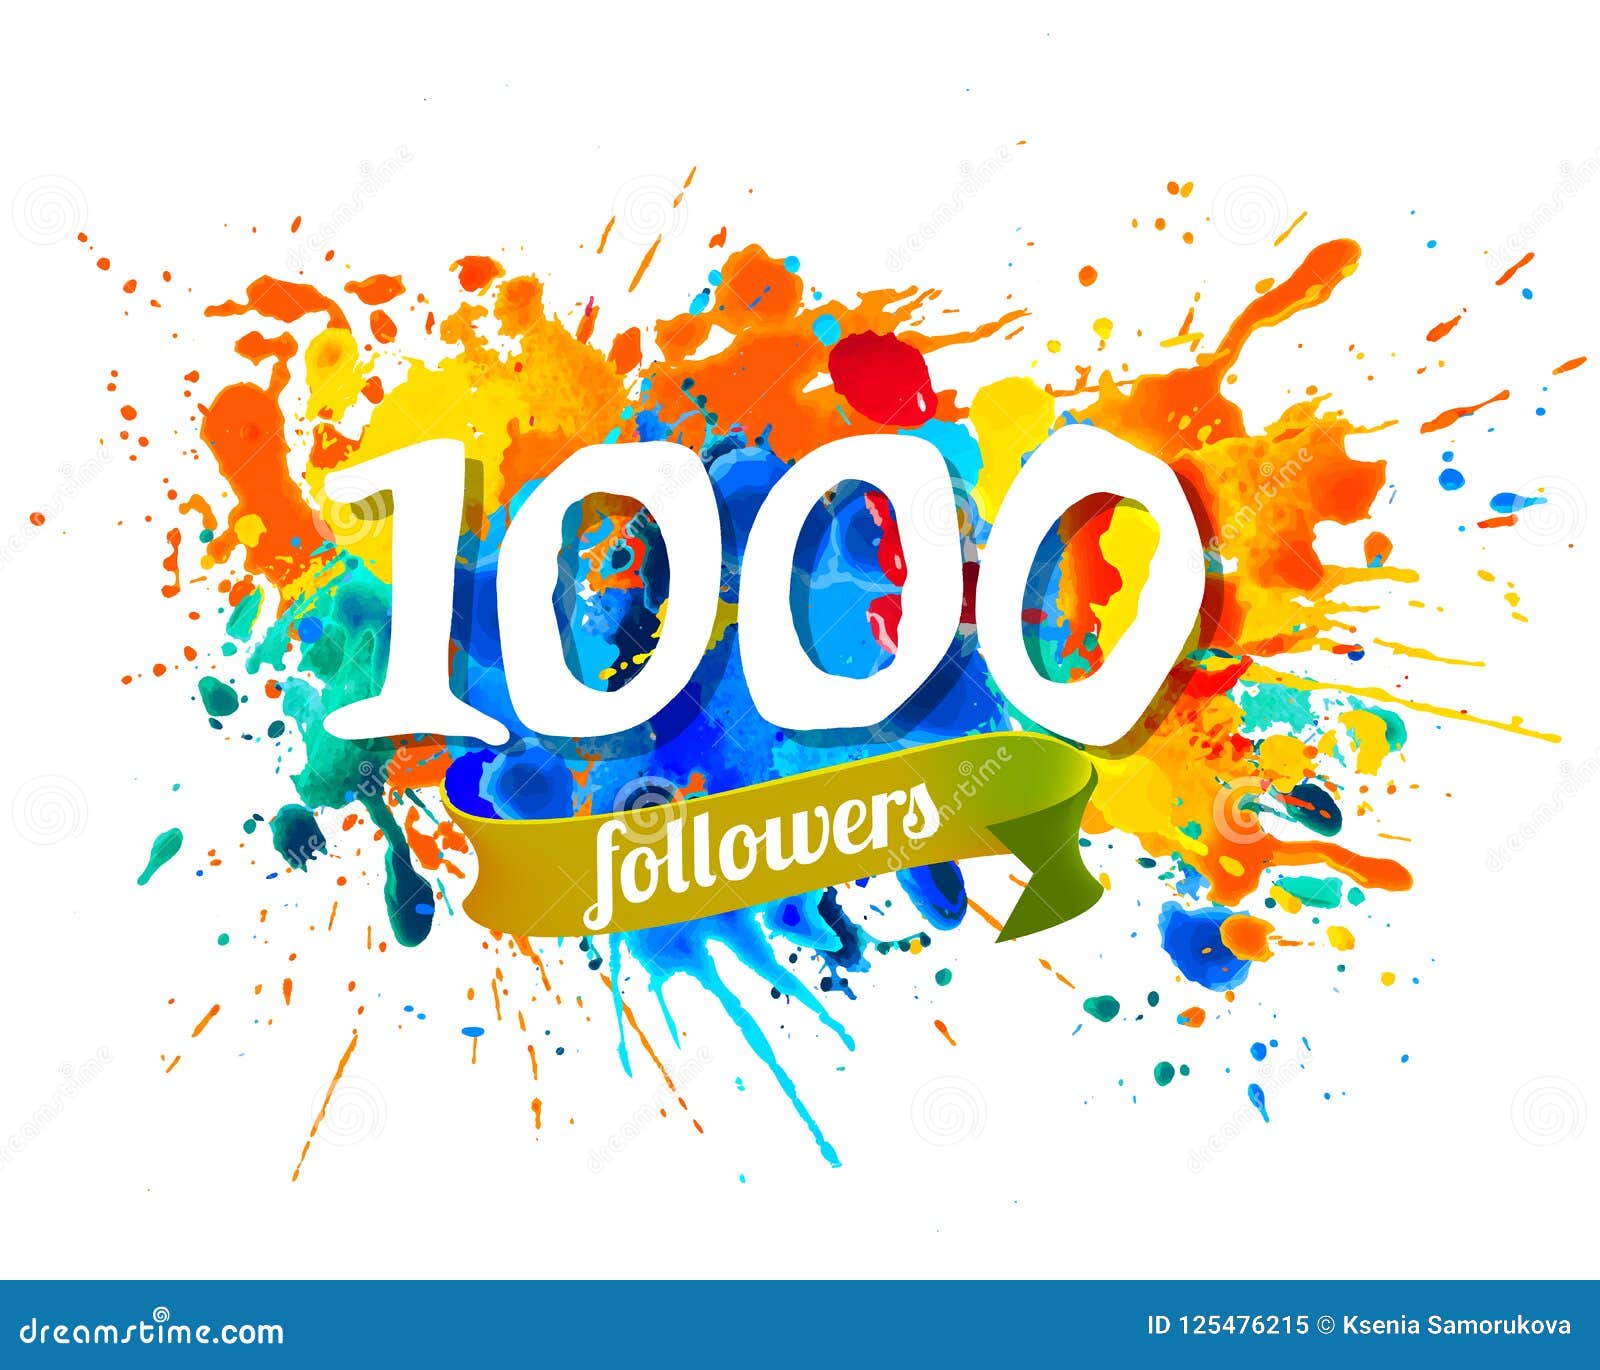 1000 Followers Splash Paint Inscraiption Stock Vector